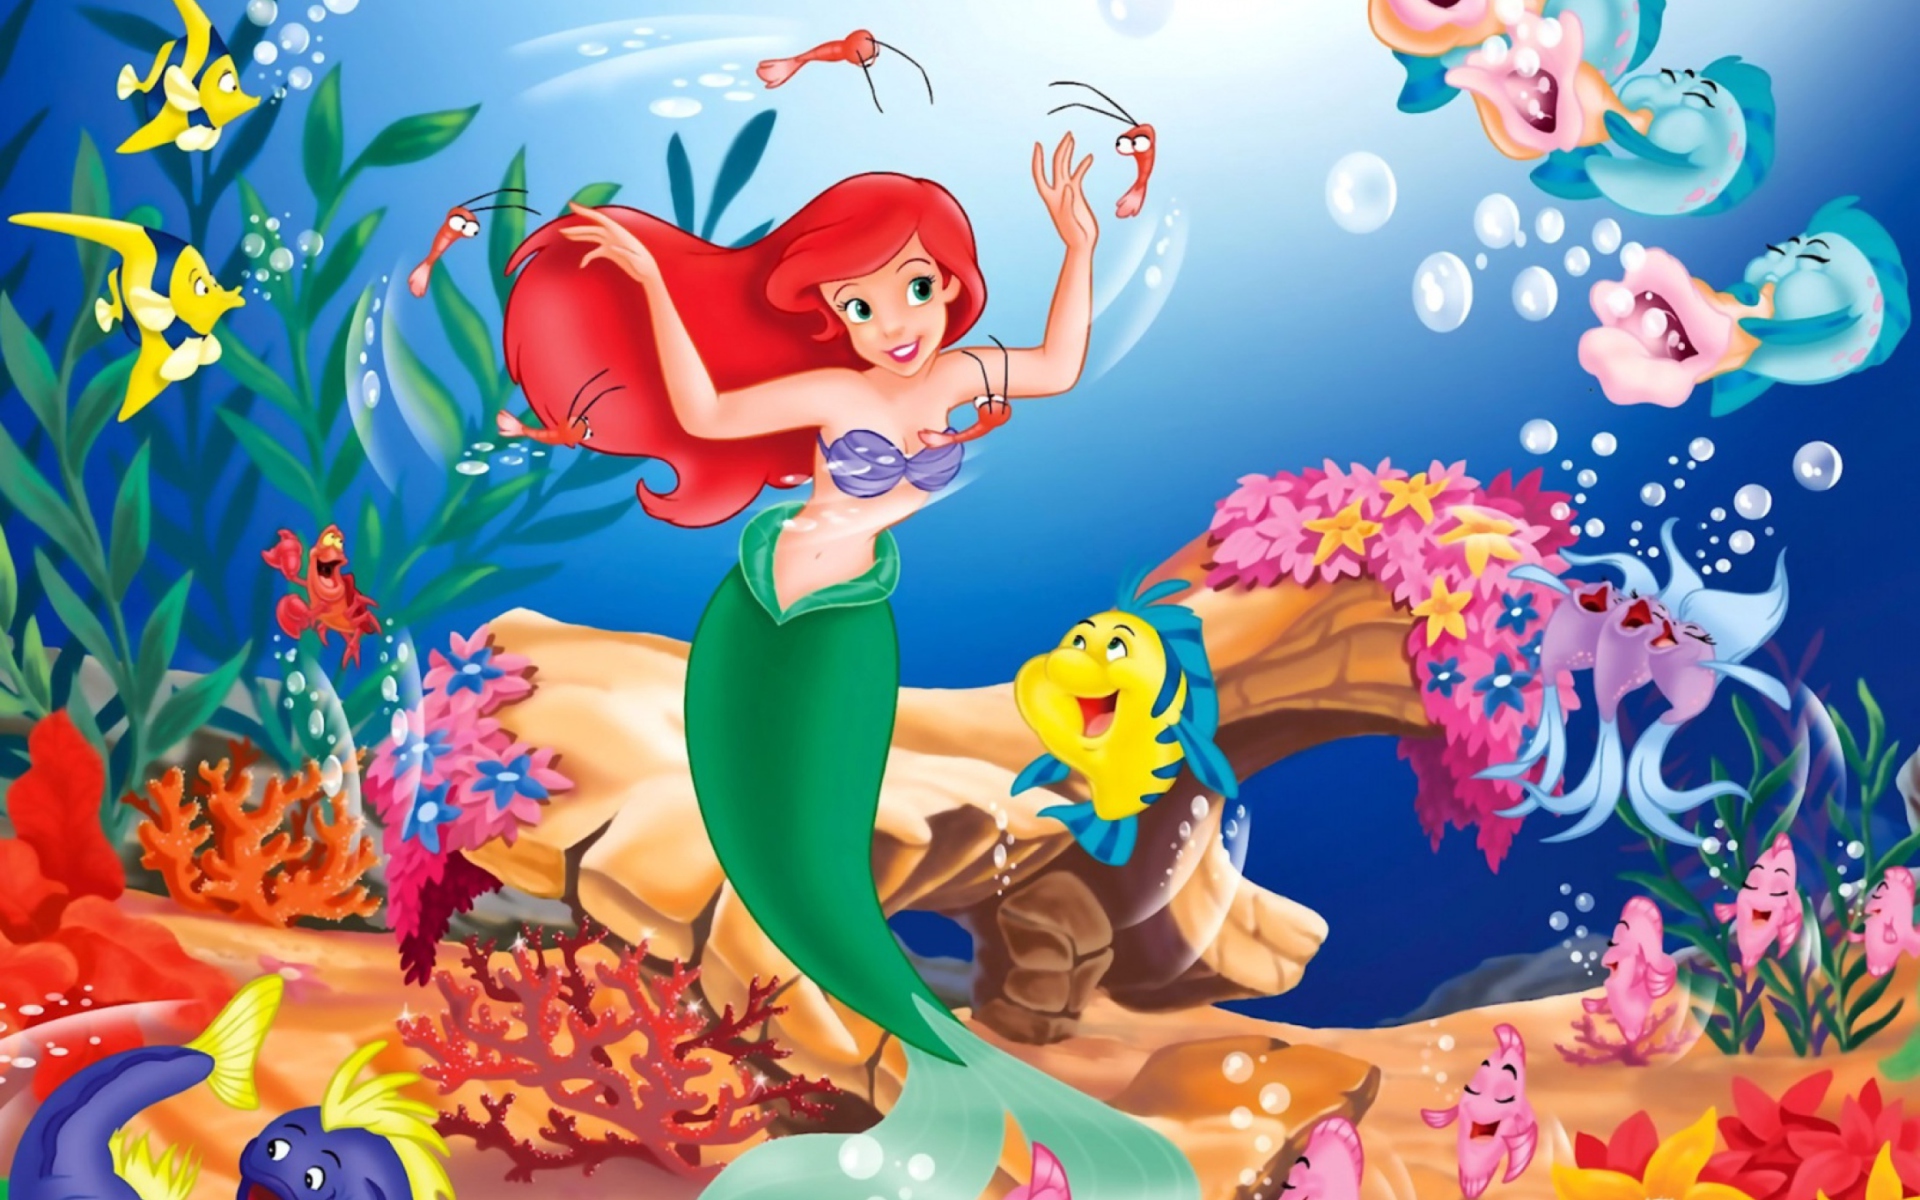 Disney - The Little Mermaid - Fondos de pantalla gratis para Widescreen  escritorio PC 1920x1080 Full HD